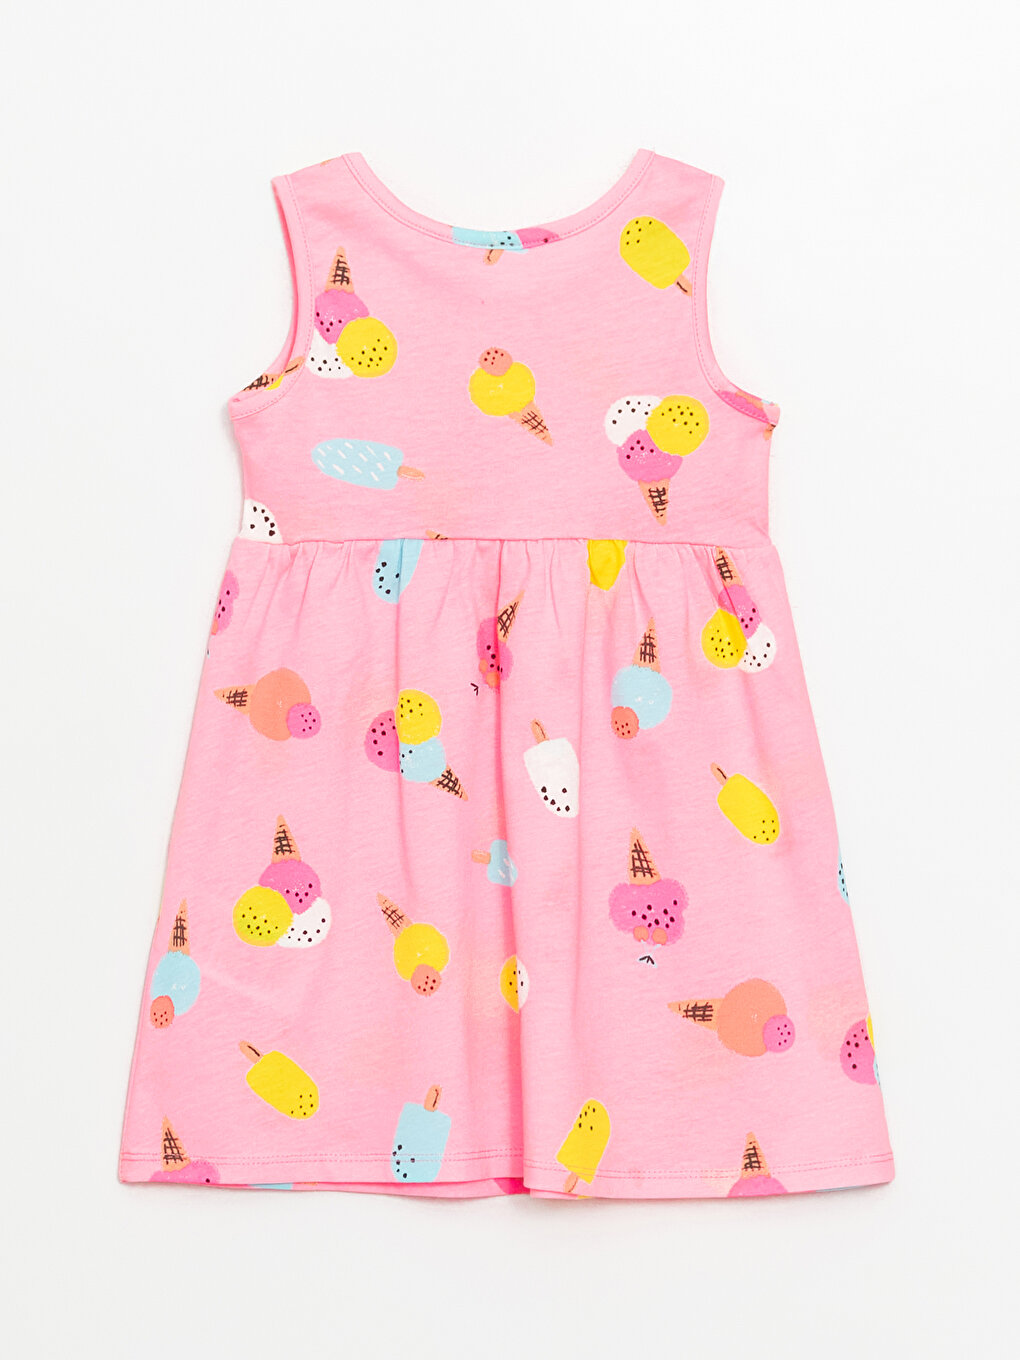 Crew Neck Printed Baby Girl Dress -S4AG94Z1-LT4 - S4AG94Z1-LT4 